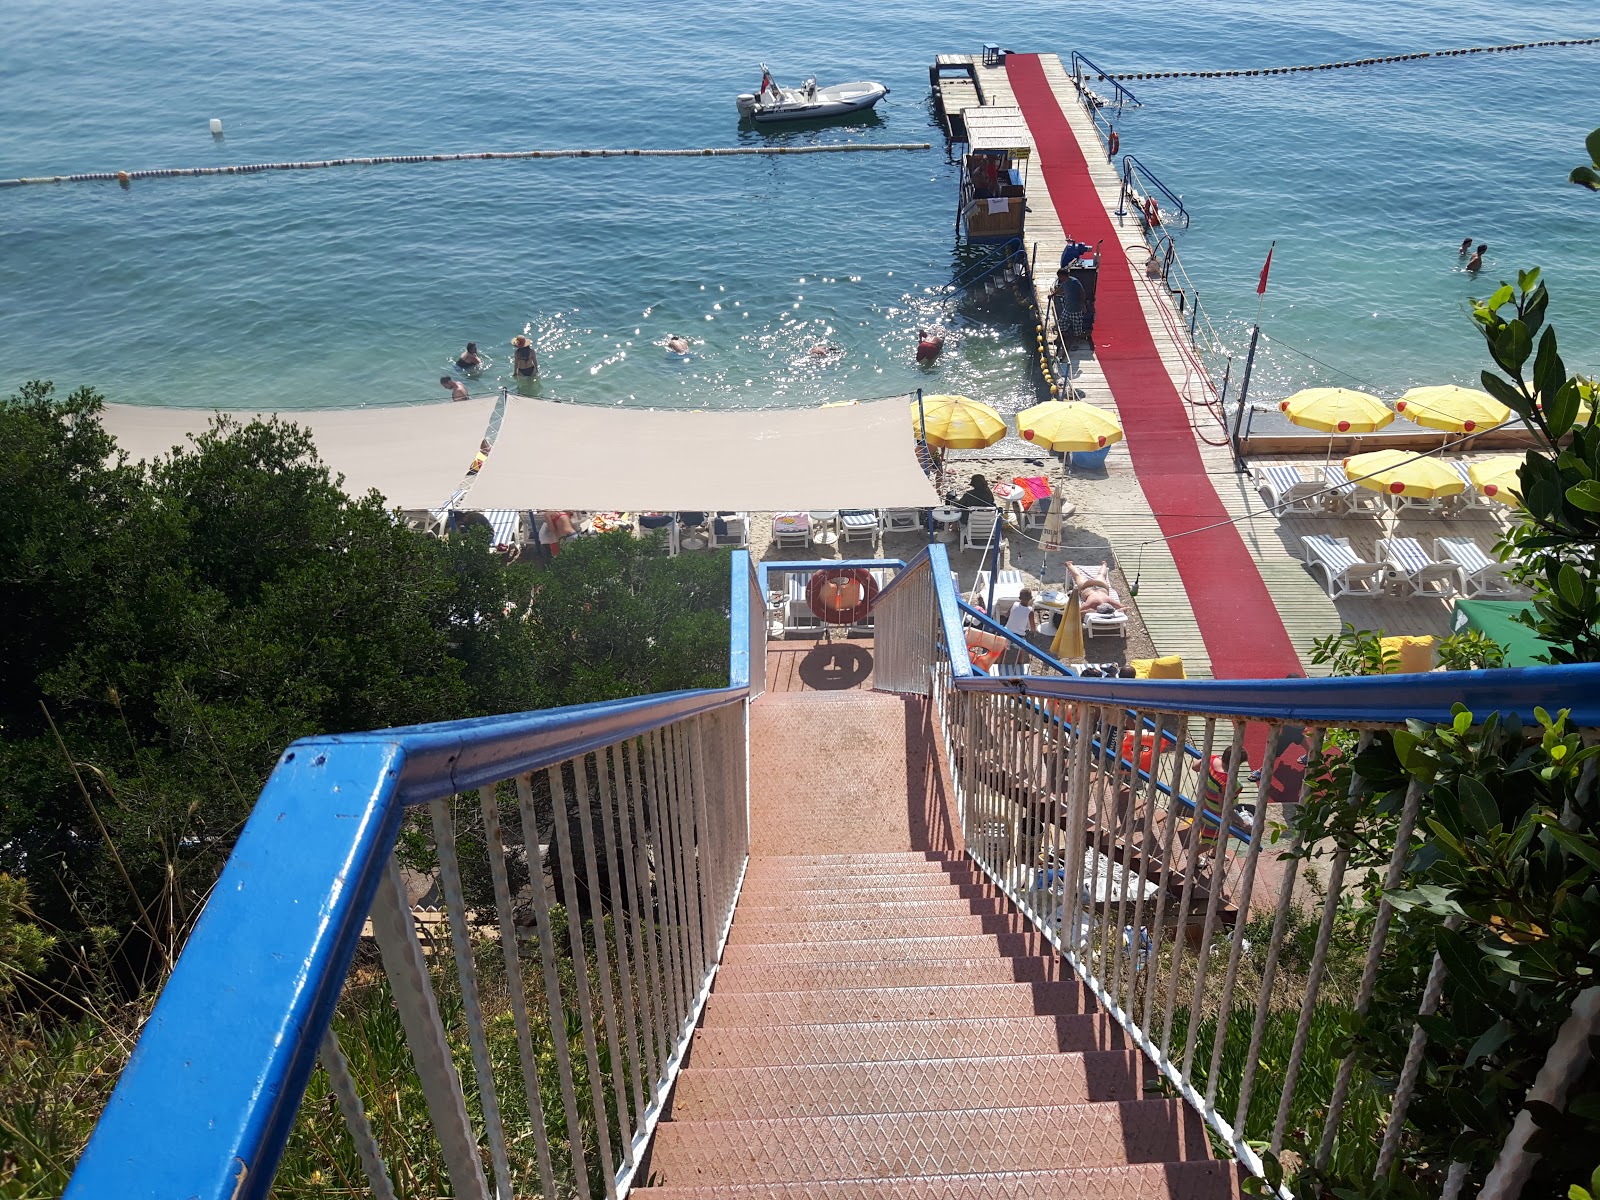 Foto de Halik Koyu Aile Plaji - lugar popular entre los conocedores del relax